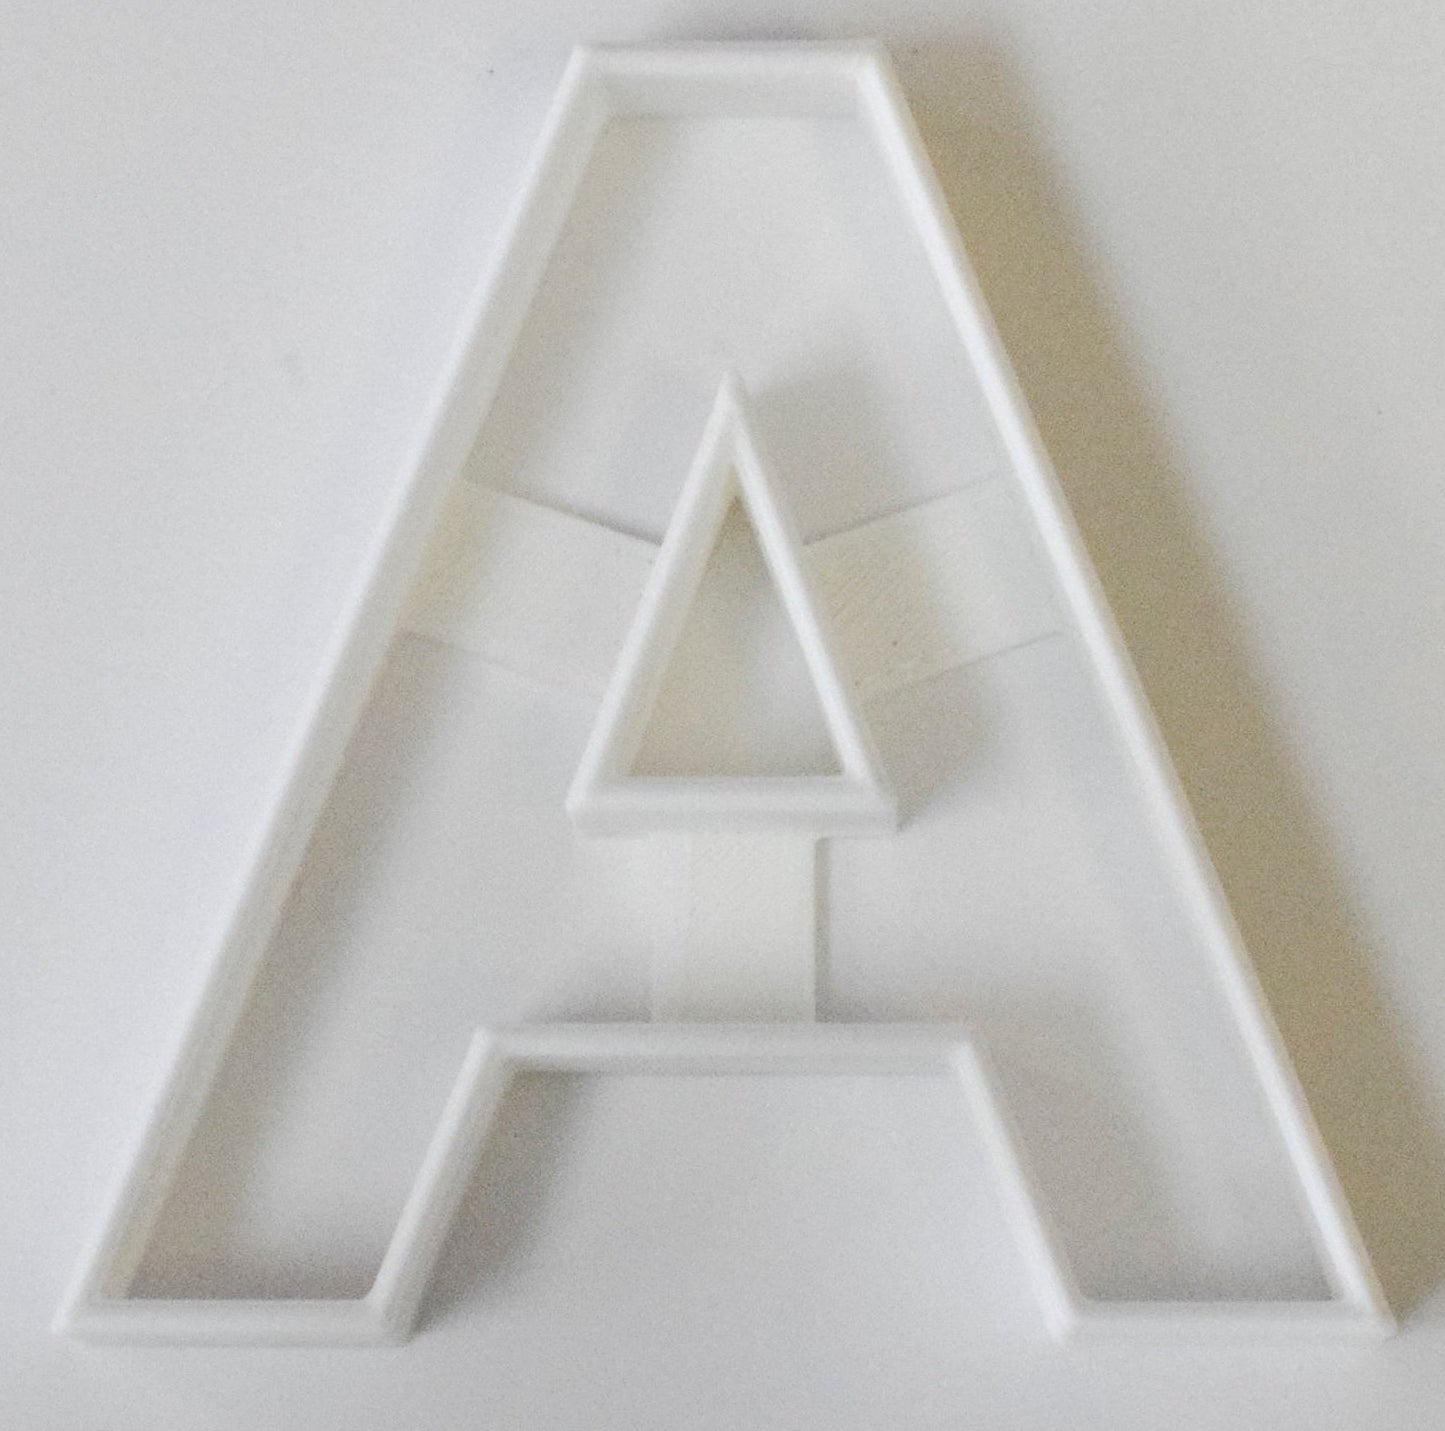 6x Letter A Alphabet Fondant Cutter Cupcake Topper Size 1.75" USA FD107A